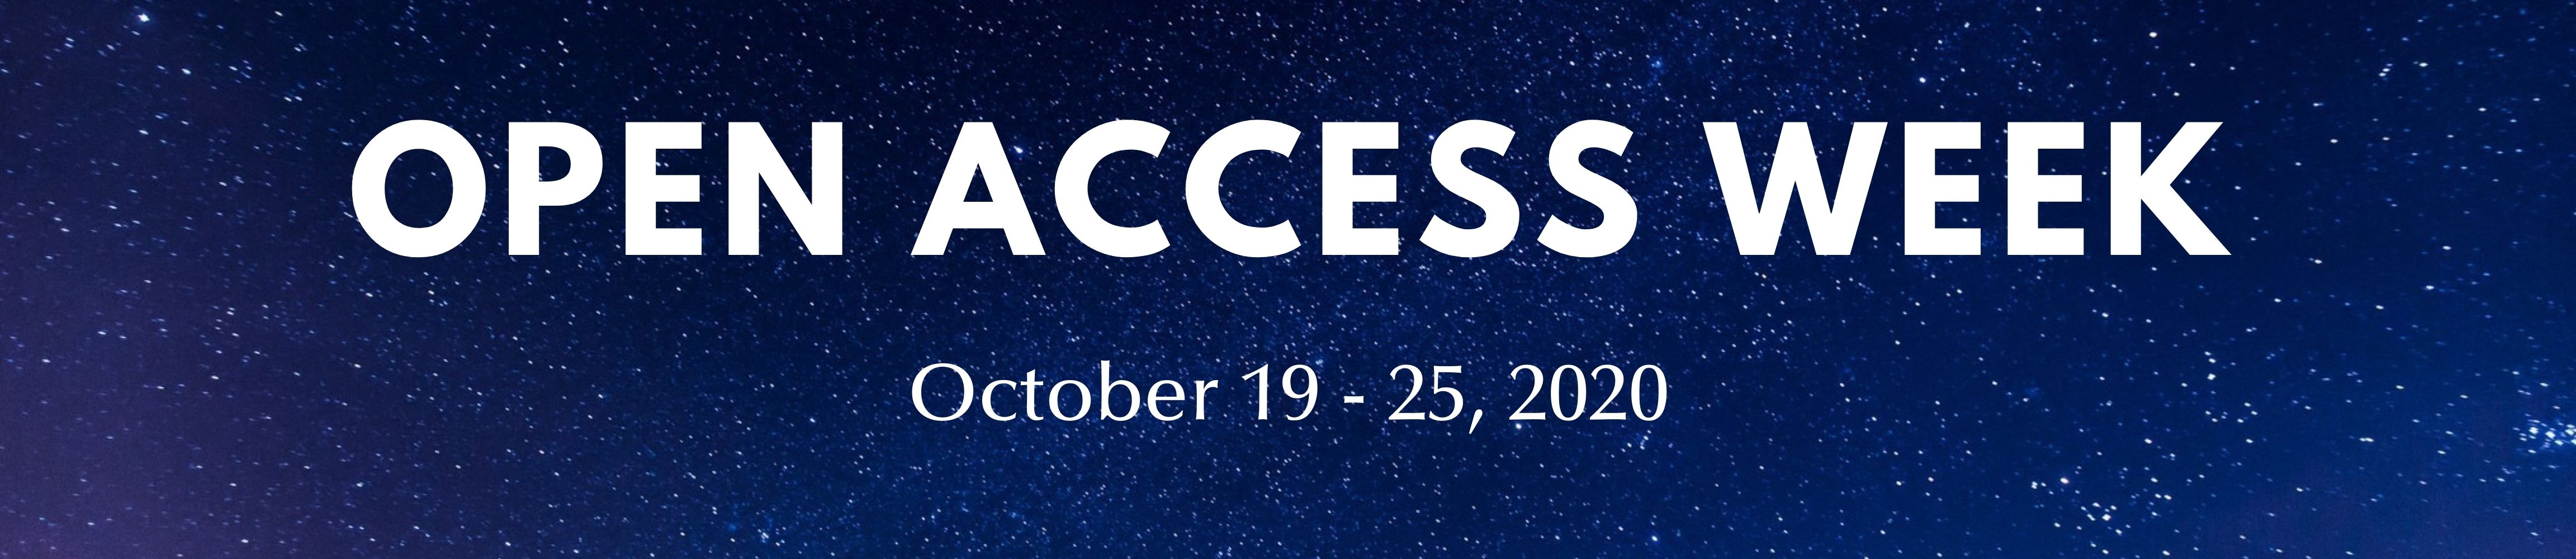 Open Access Week Banner